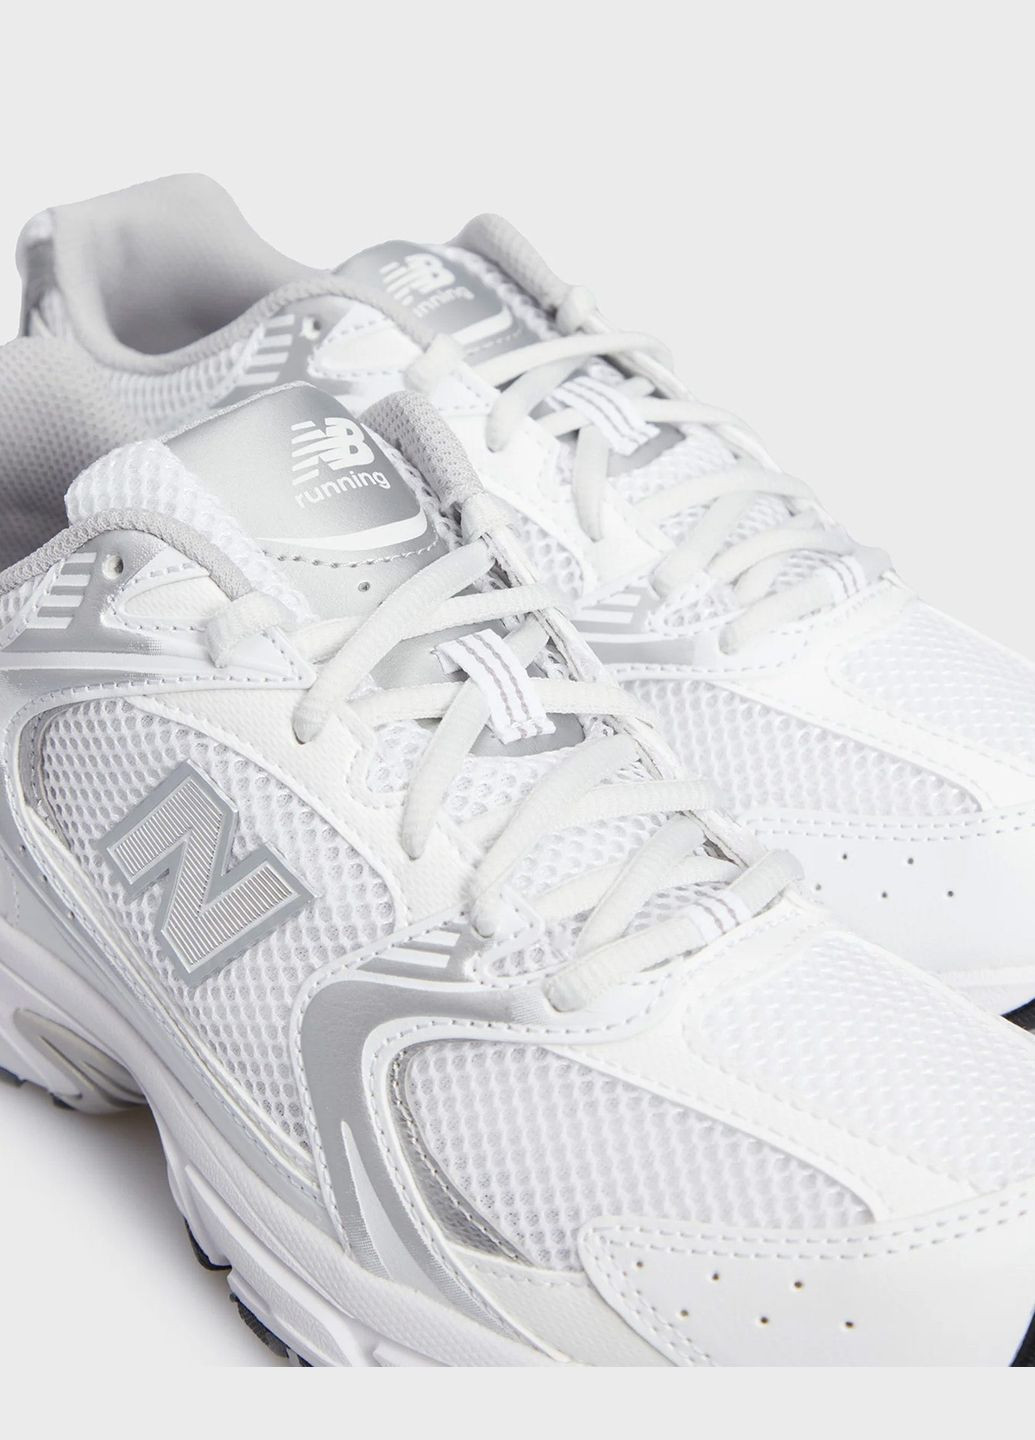 Білі всесезон кросівки чоловічі 530 mr530ema весна-літо сітка синтетика біло-сірі New Balance